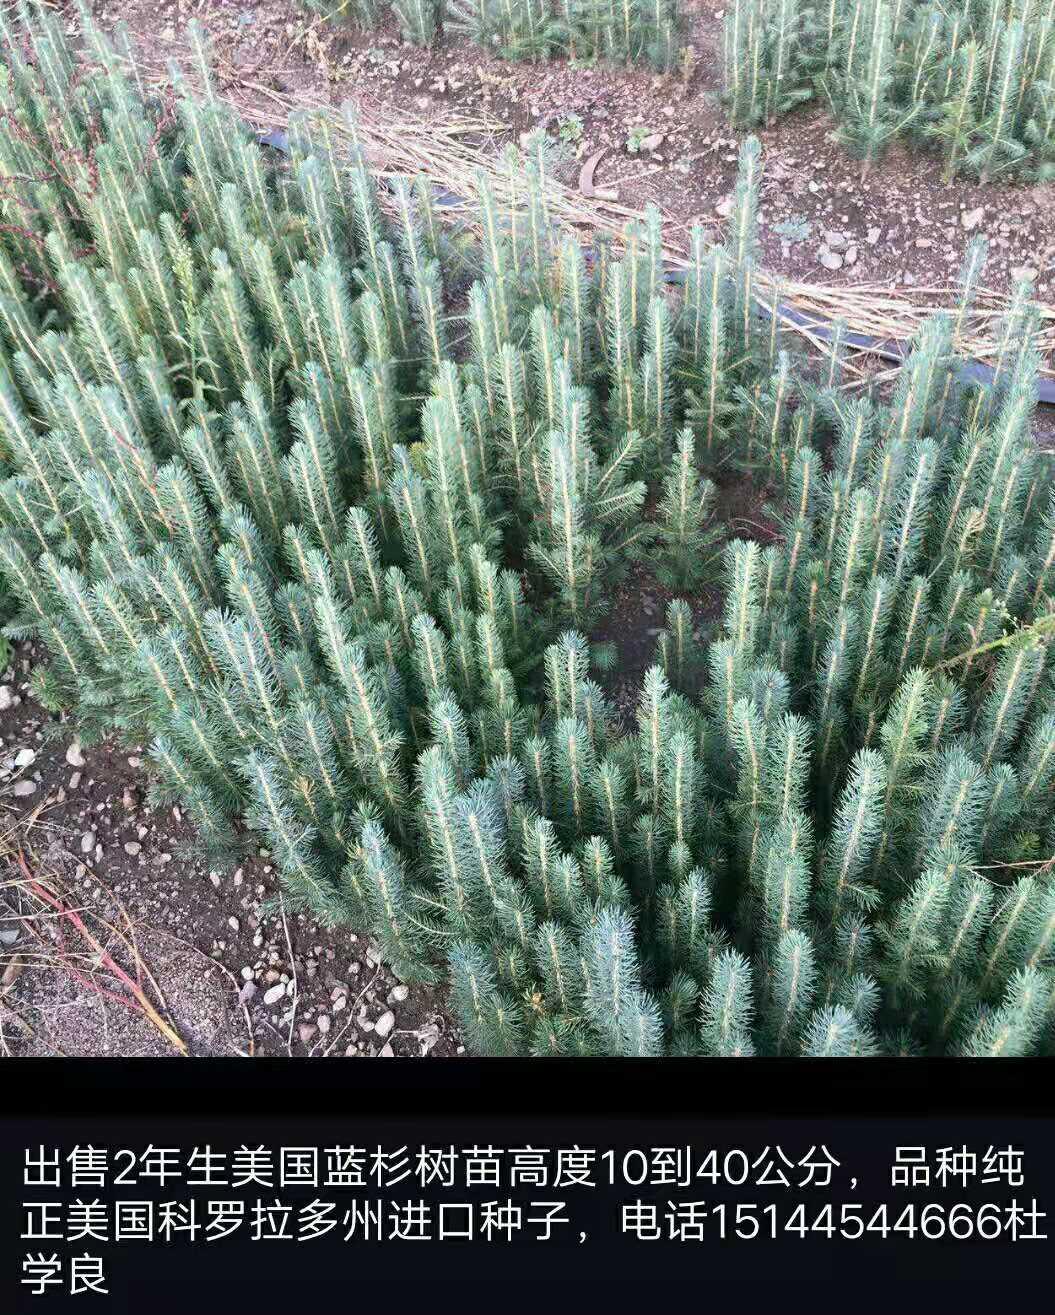 柳河县慧良苗木供应大量优质苗木